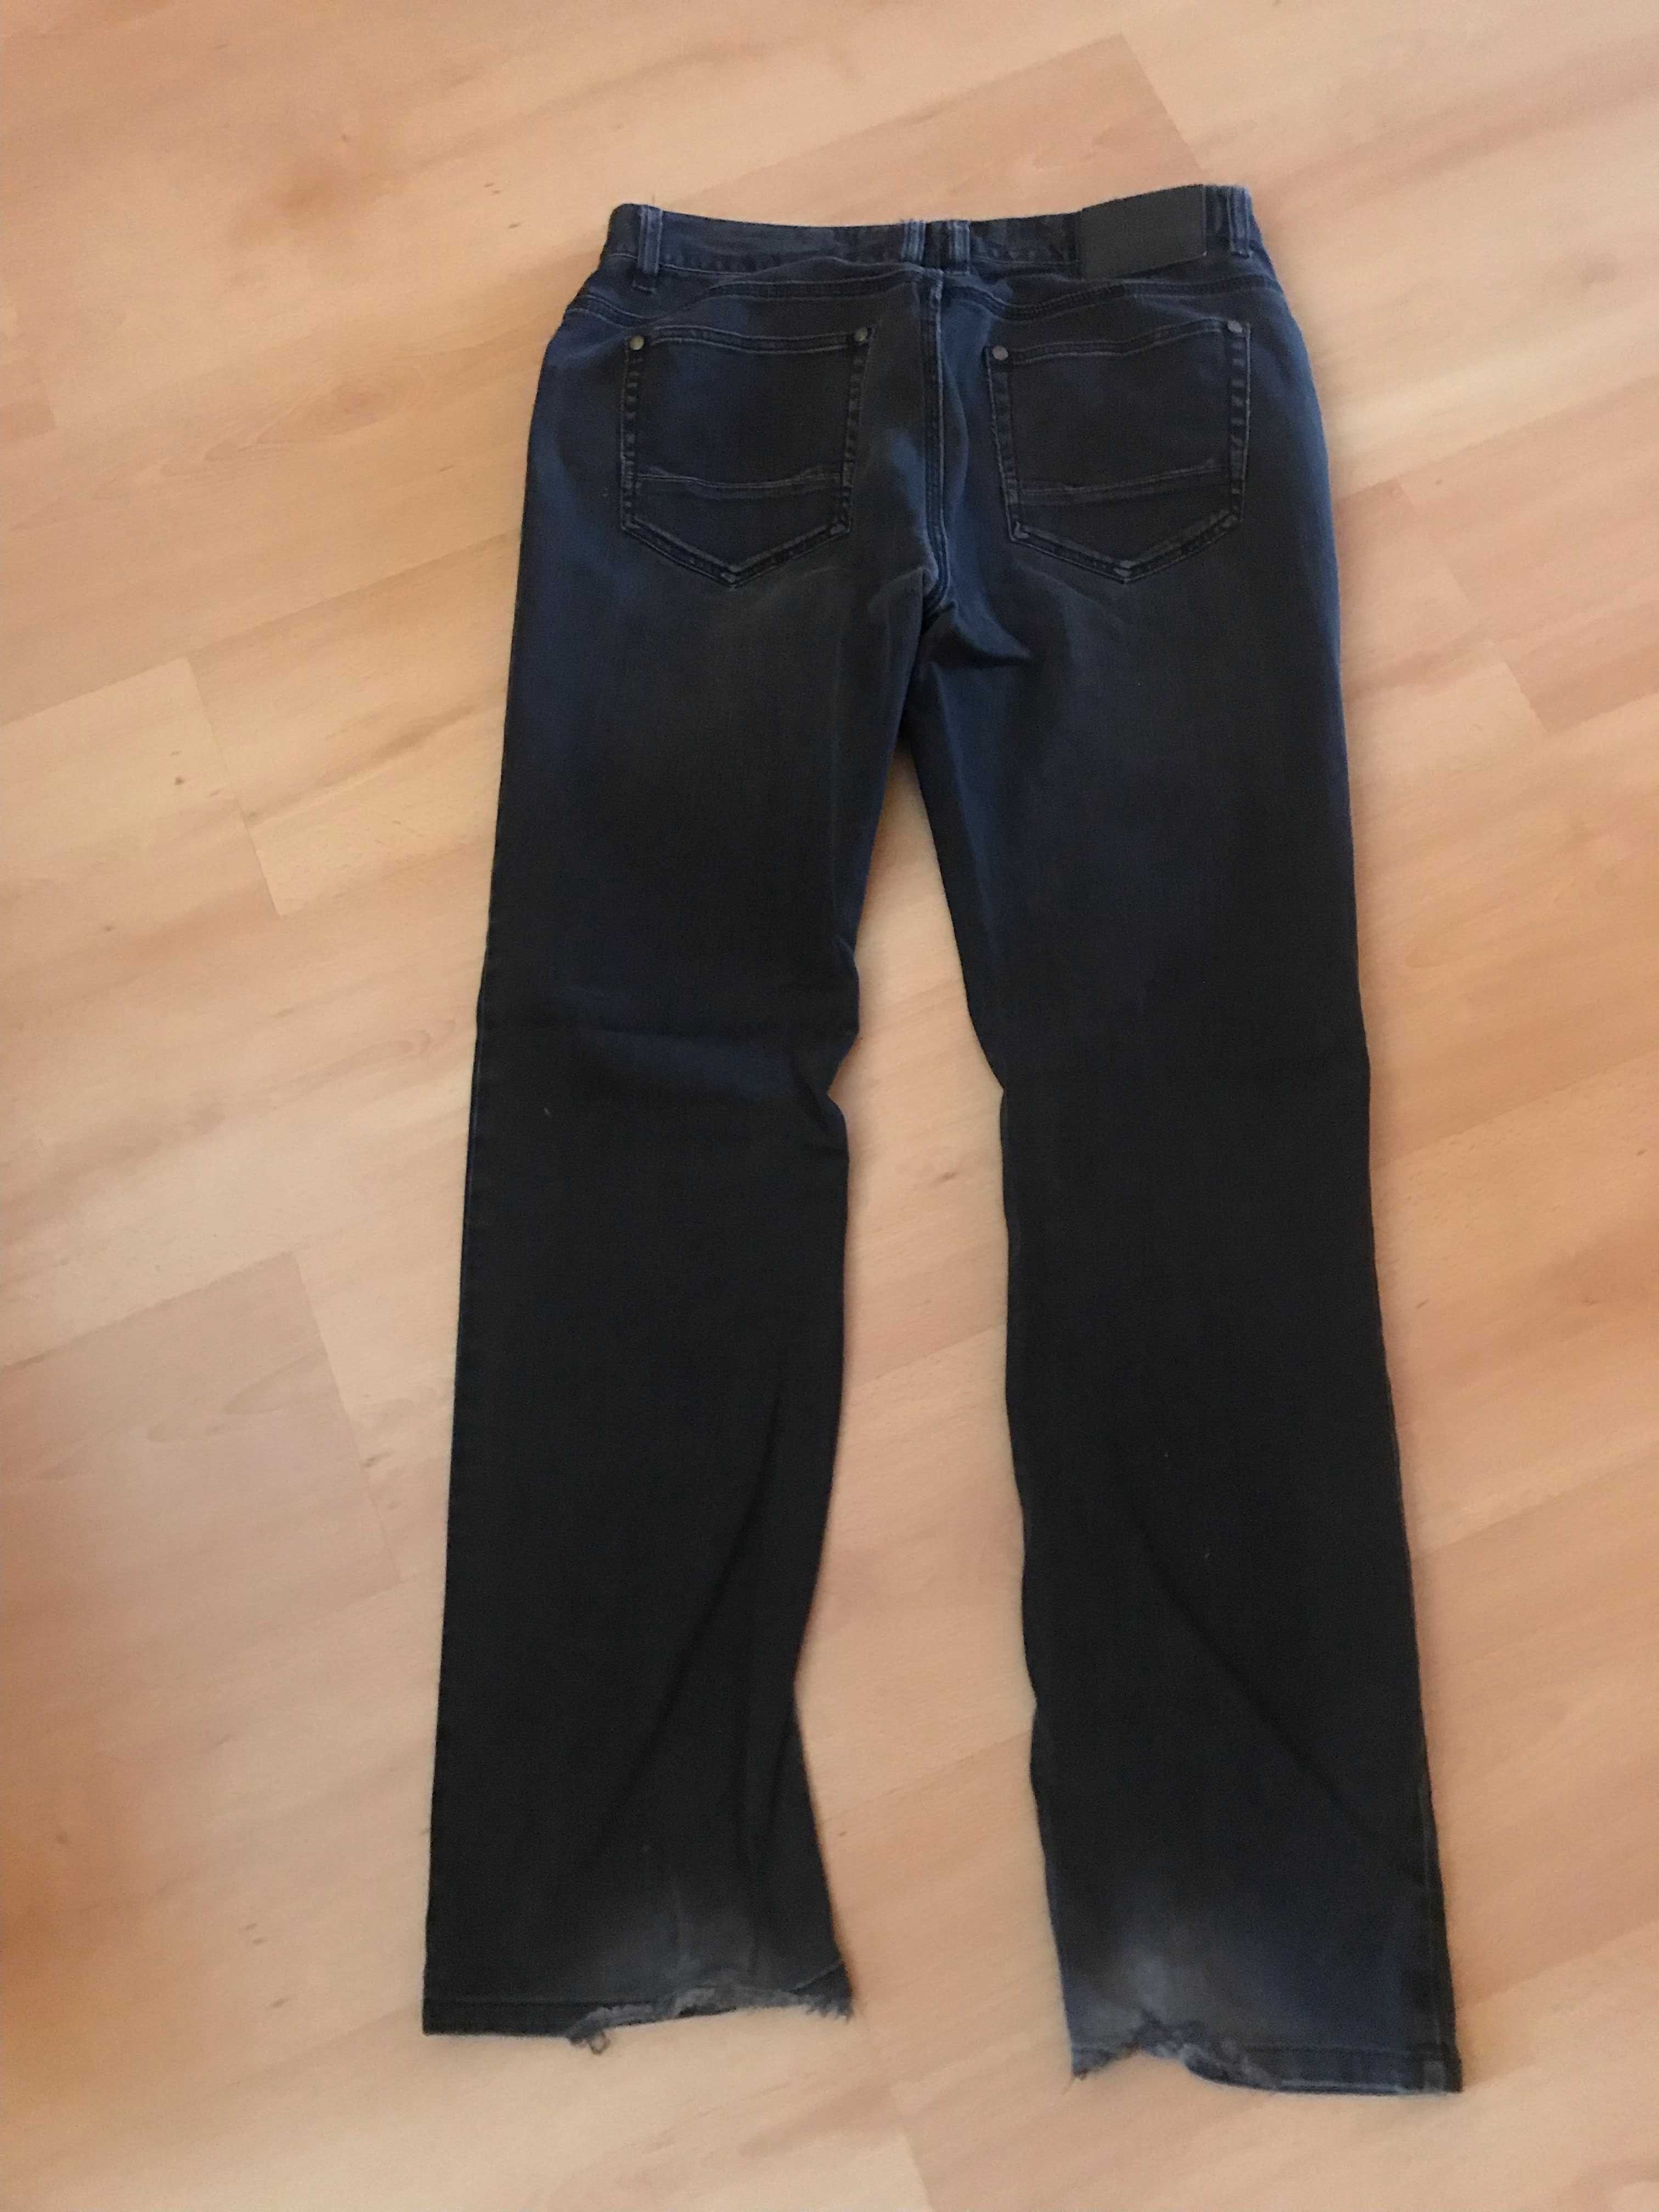 Spodnie jeansowe czarne, Southern, W31, L32, straight fit